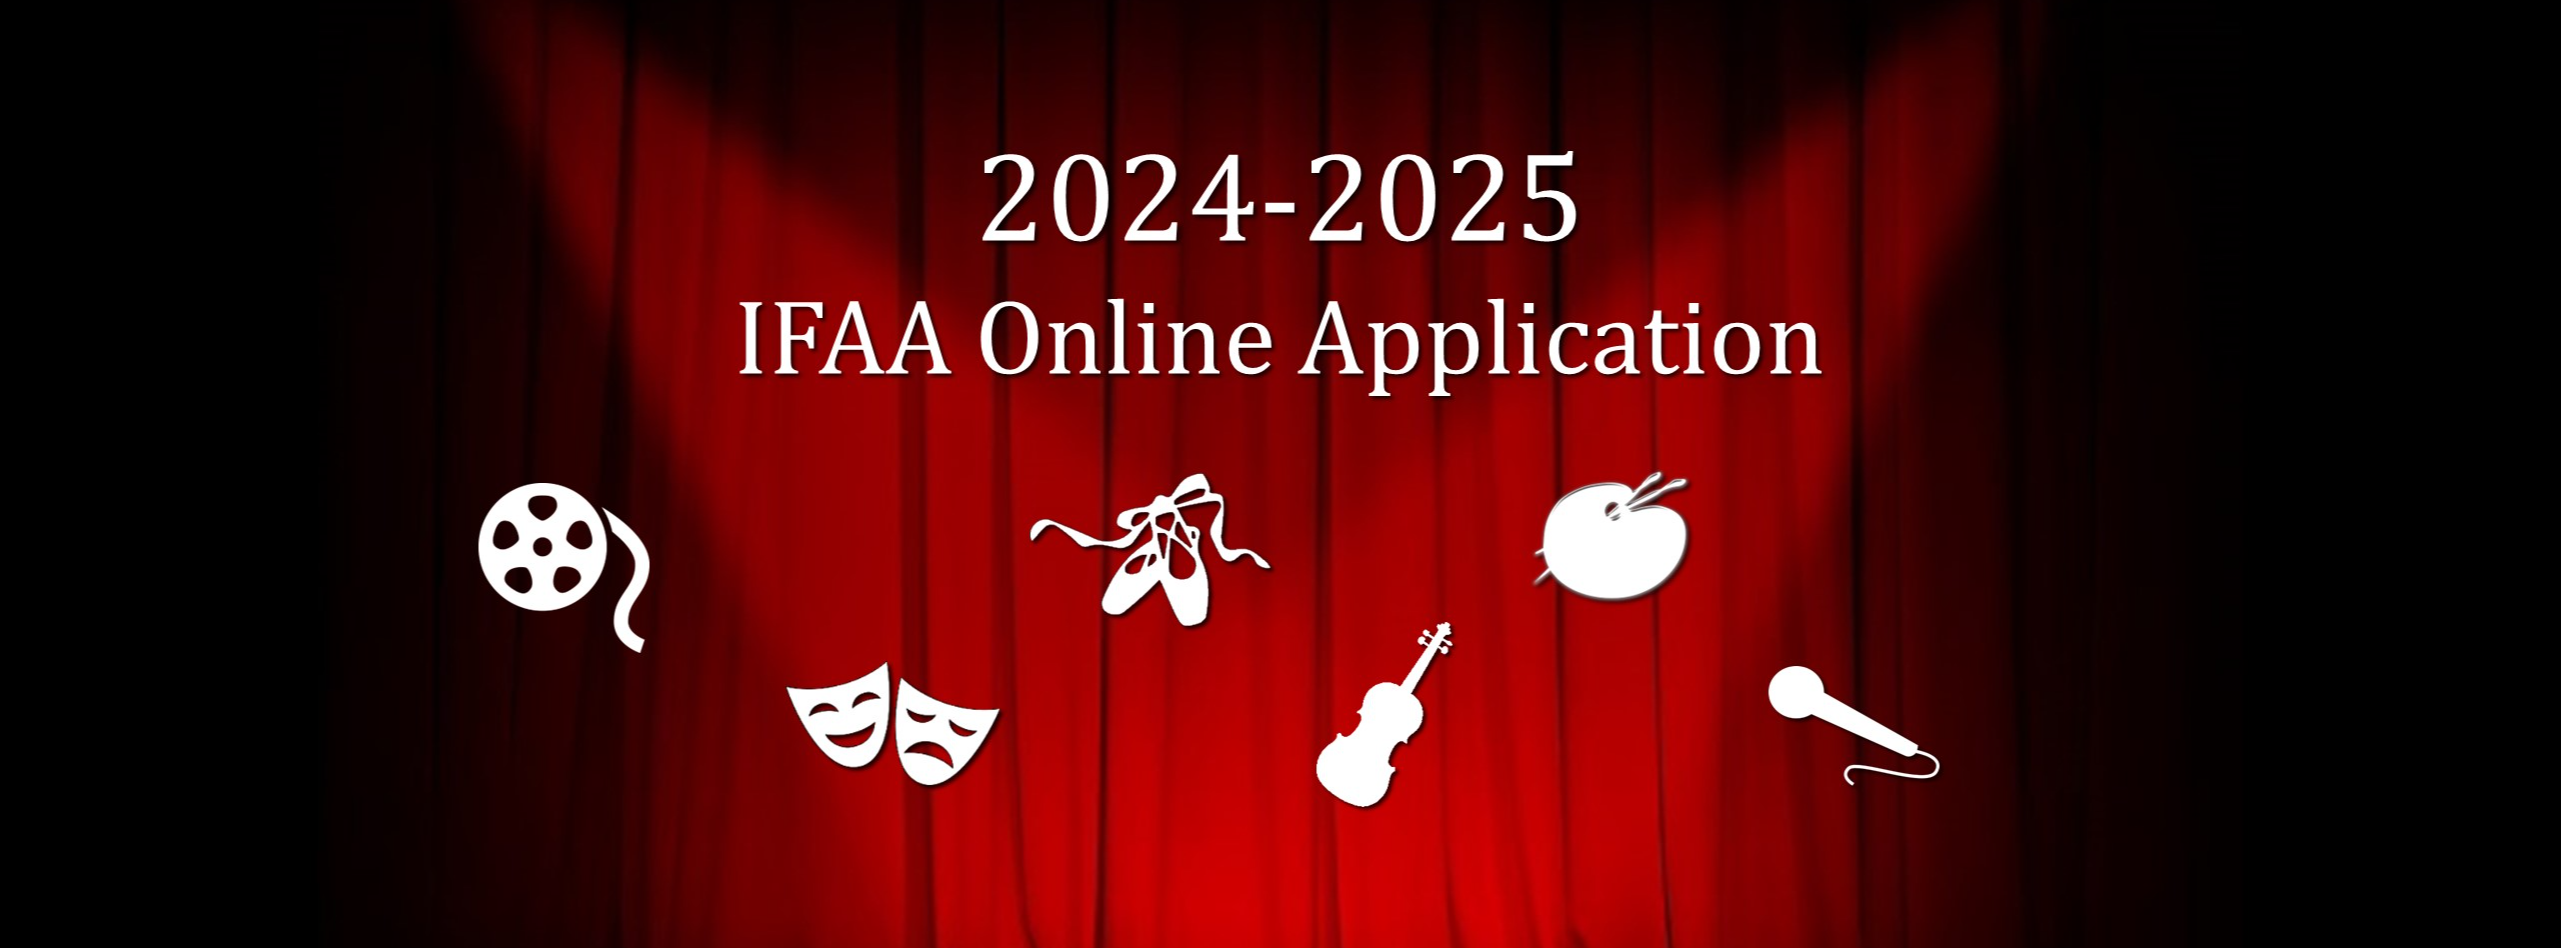 2024-2025 IFAA Online Application (art major graphics)